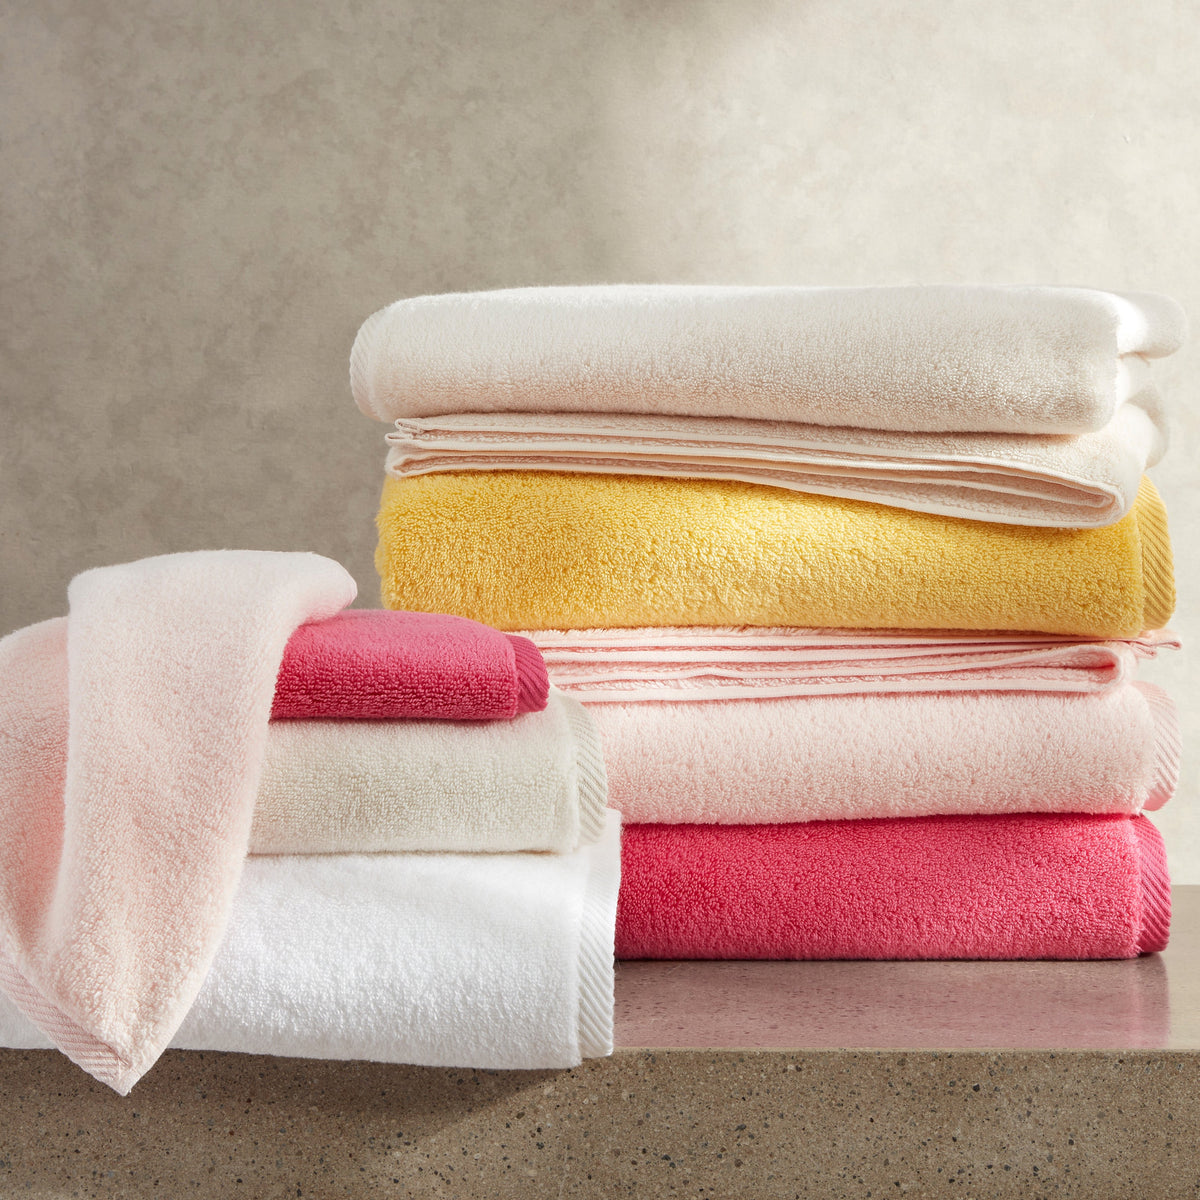 https://flandb.com/cdn/shop/products/Matouk-Bath-Milagro-Towels-Yellow-Pink-Stack_d5de5e9f-9248-4645-af35-f42c81efba24_1200x.jpg?v=1704282311